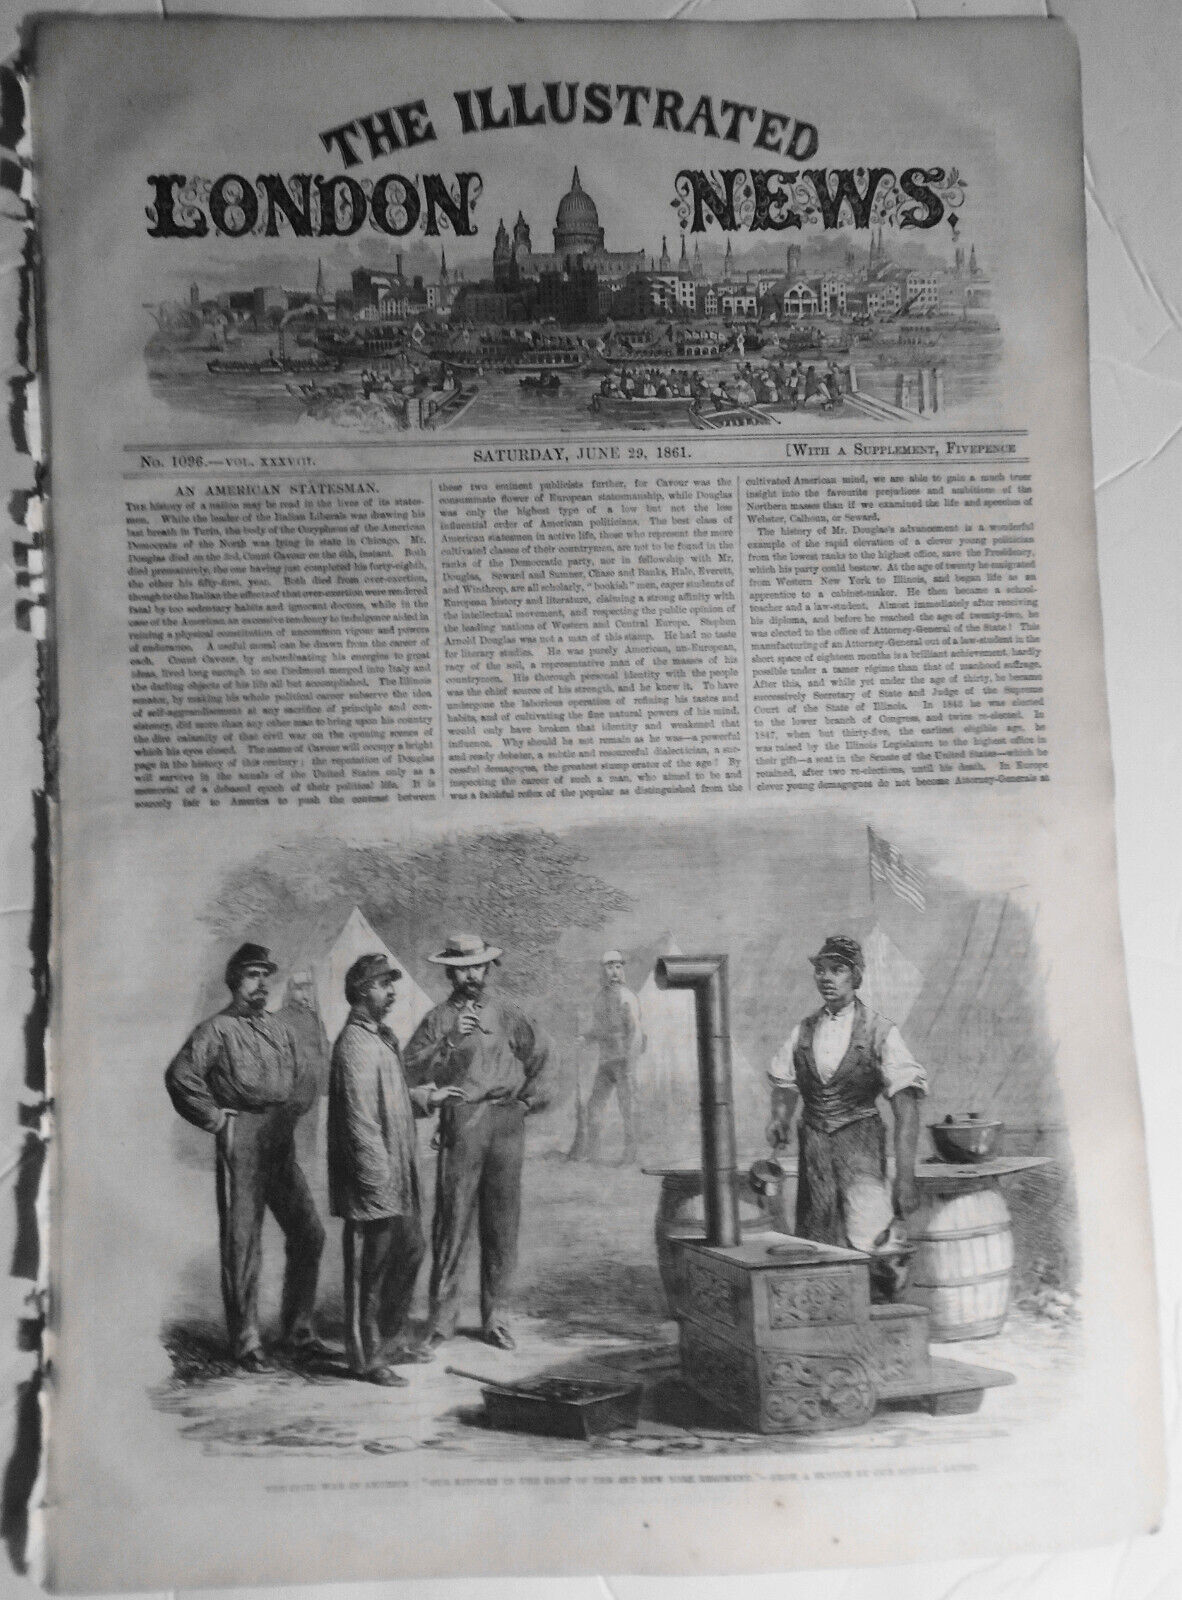 Illustrated London News, June 29, 1861 - Civil War in America, Rifle Brigade etc